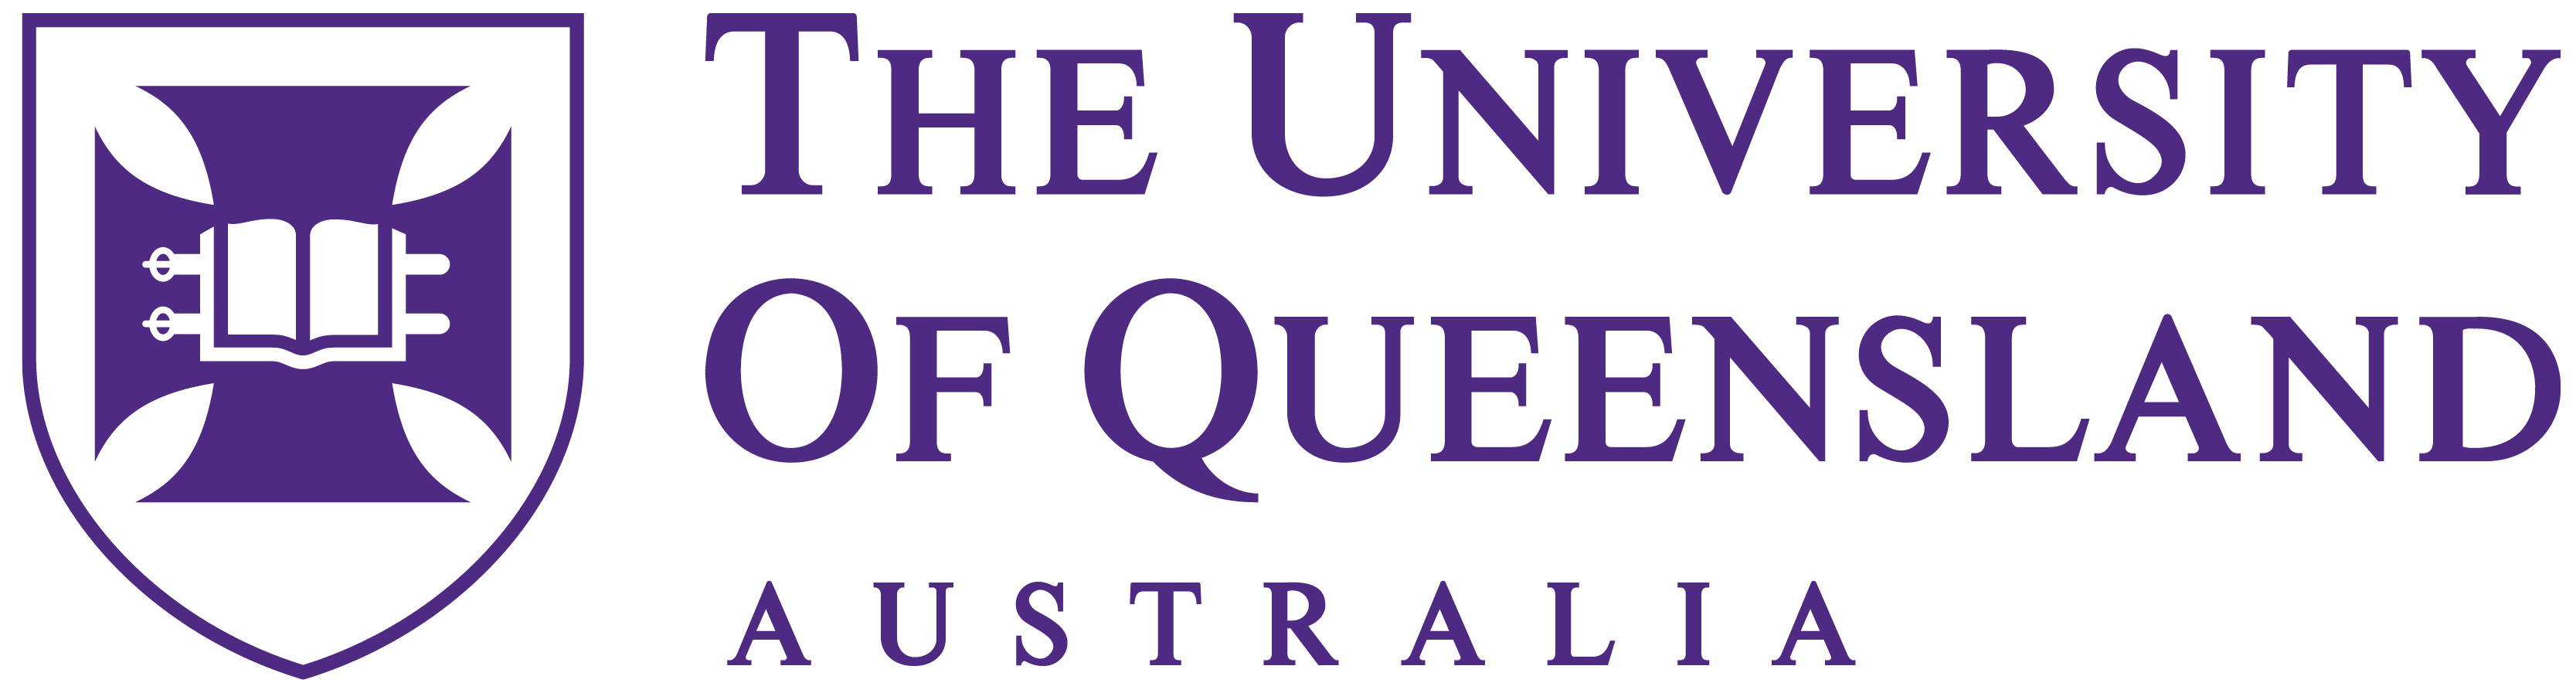 University of Queensland logo in purple